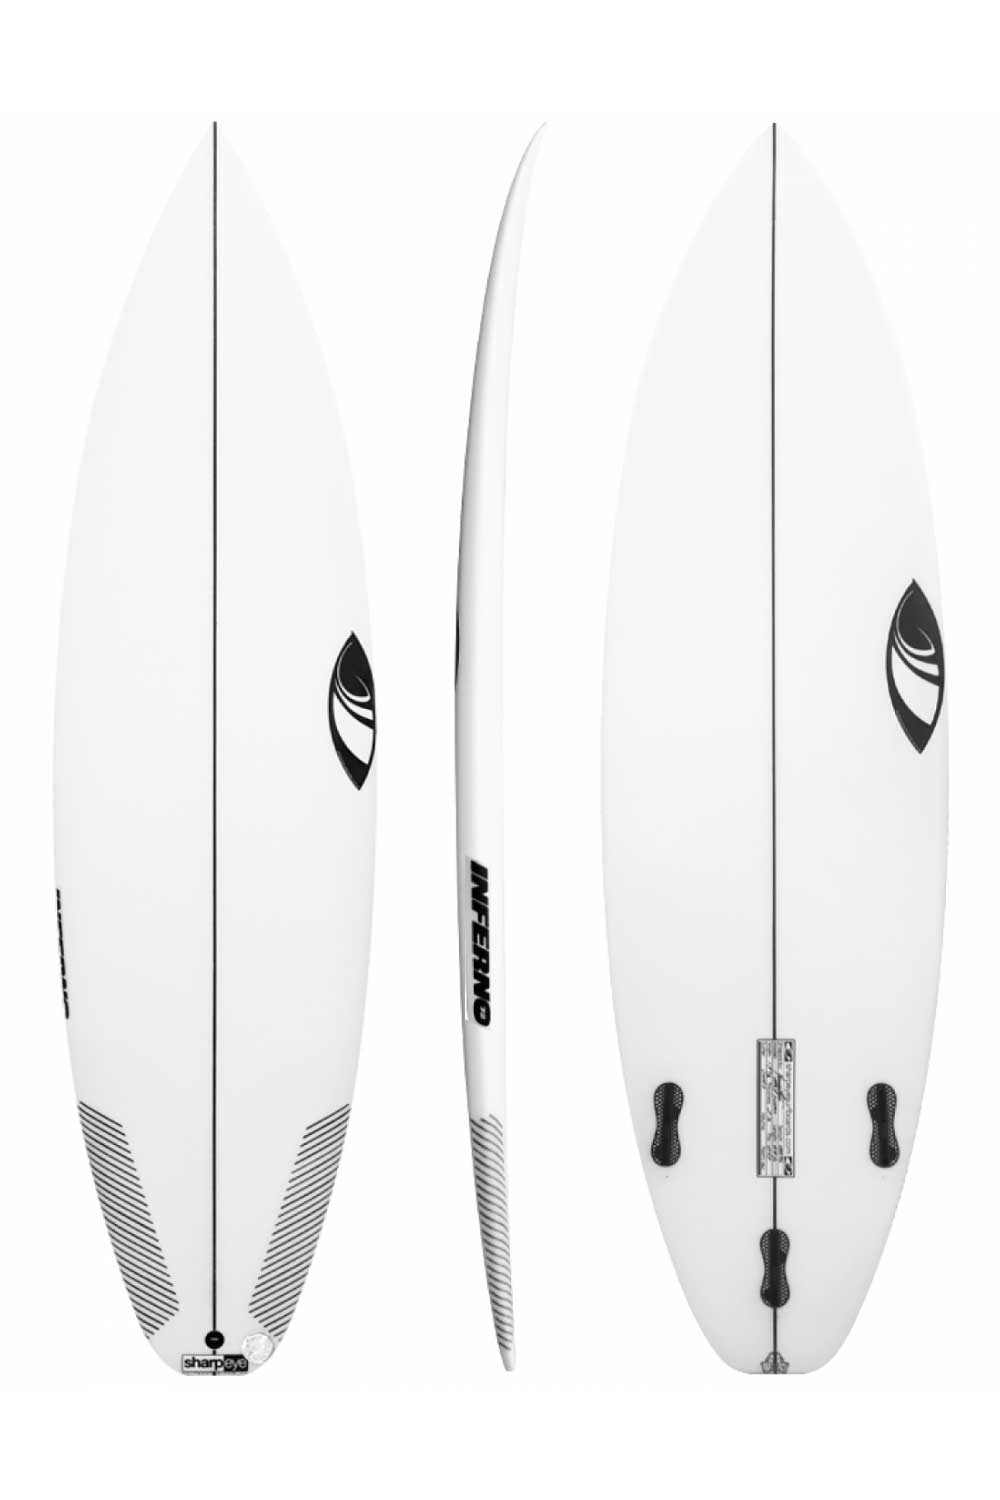 Sharp Eye Inferno 72 5'10" Surfboard